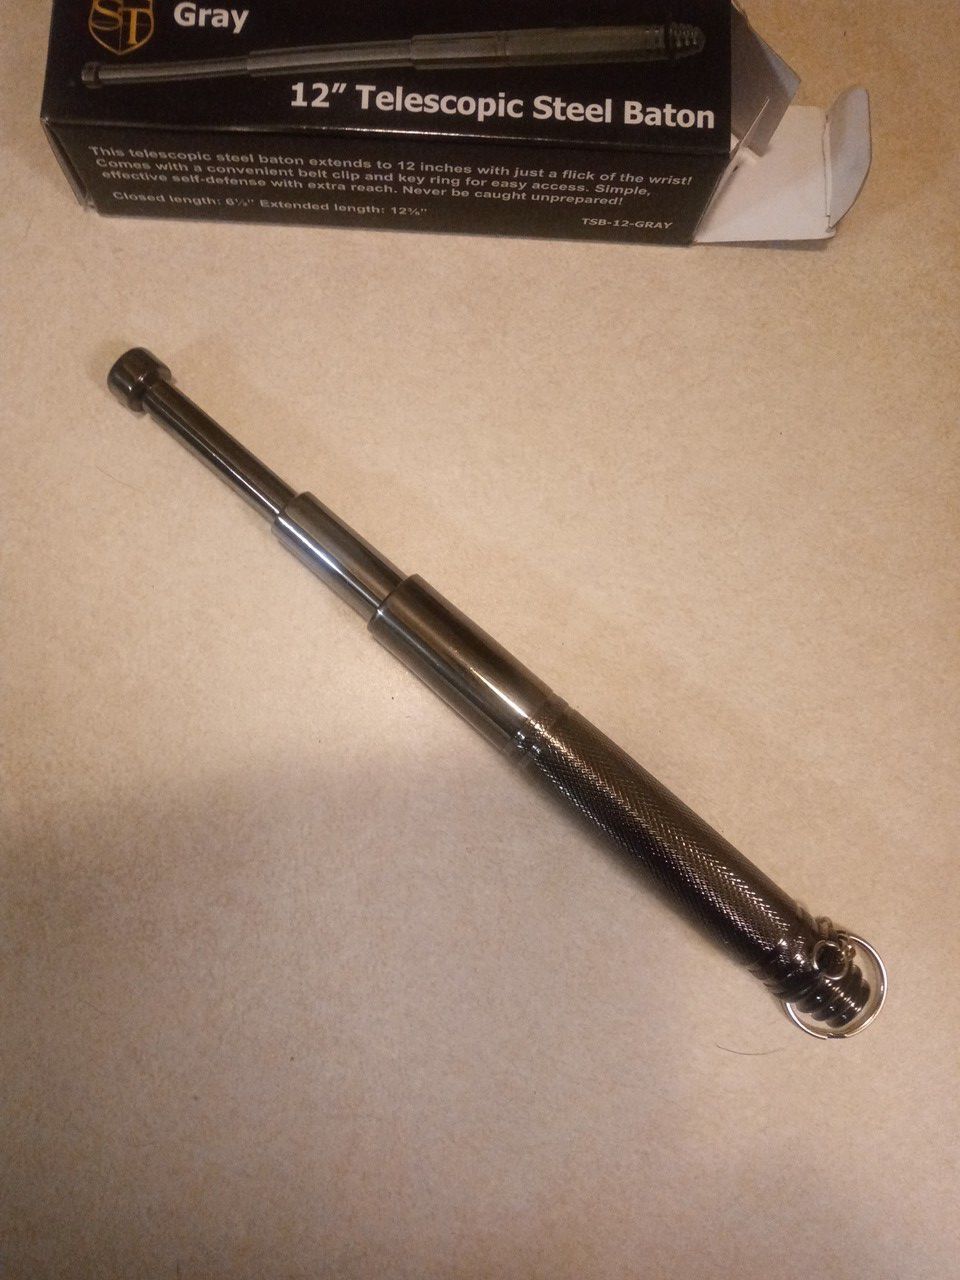 12" Telescopic steel baton